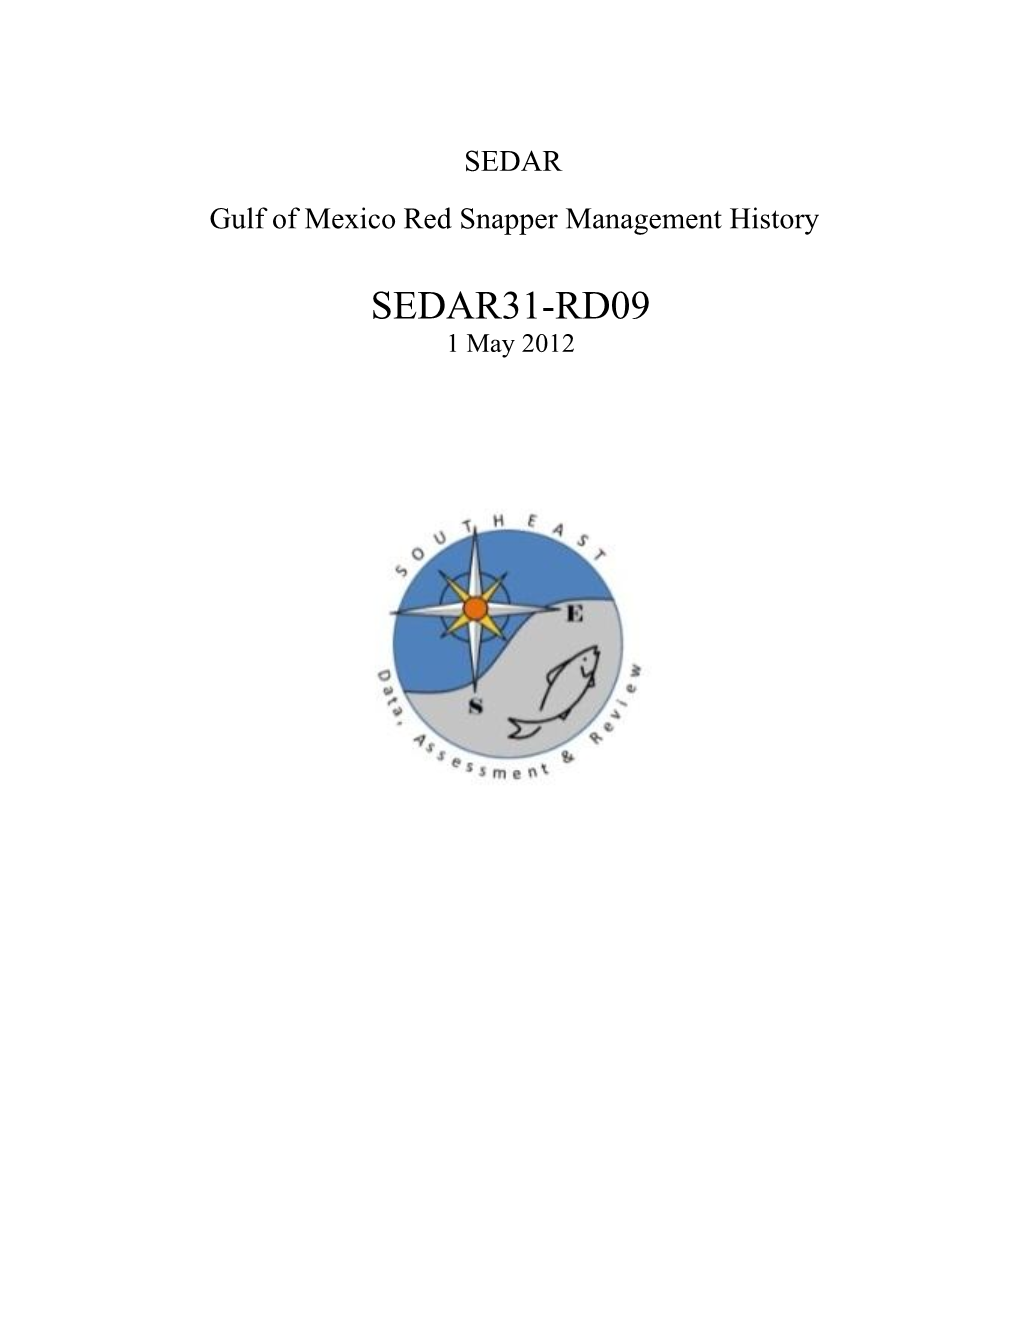 SEDAR31-RD09 Red Snapper Management History.Pdf